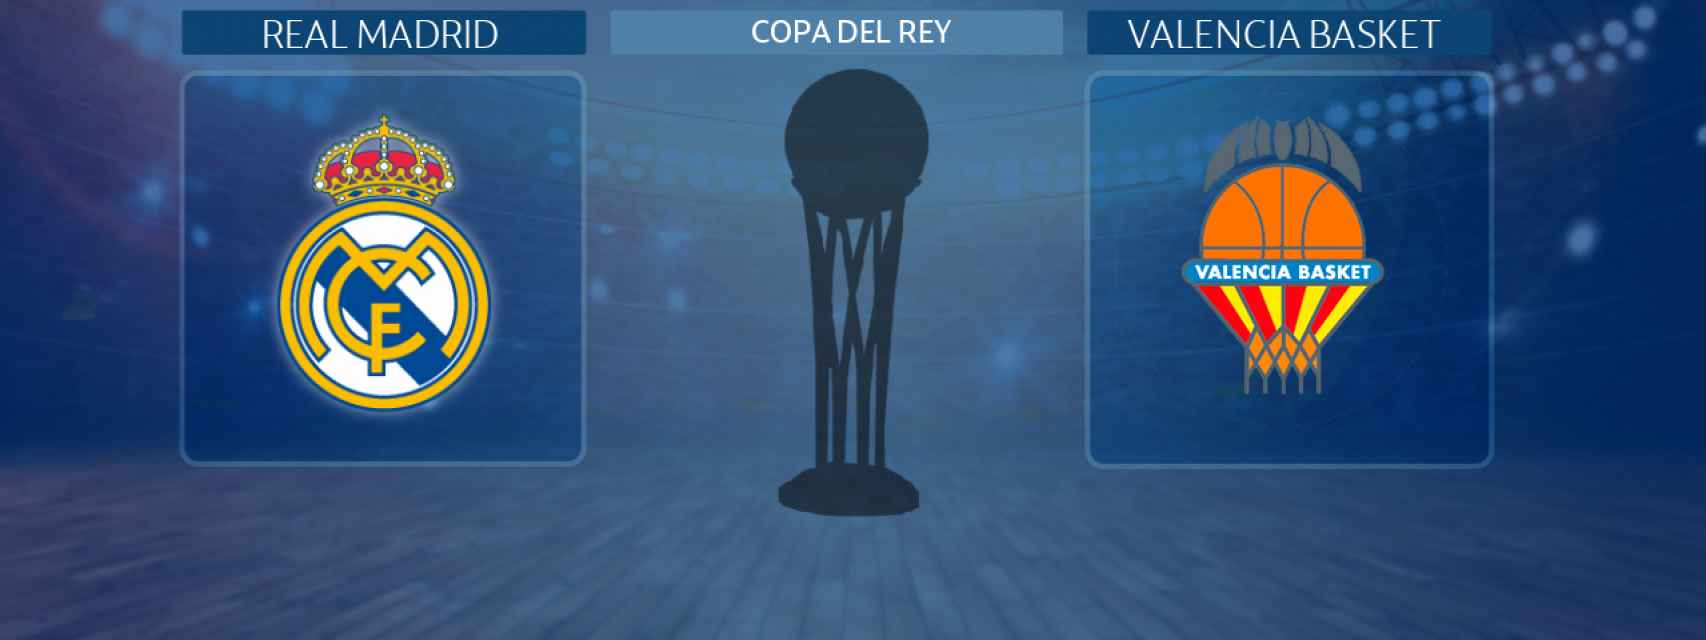 Real Madrid - Valencia Basket, partido de la Copa del Rey